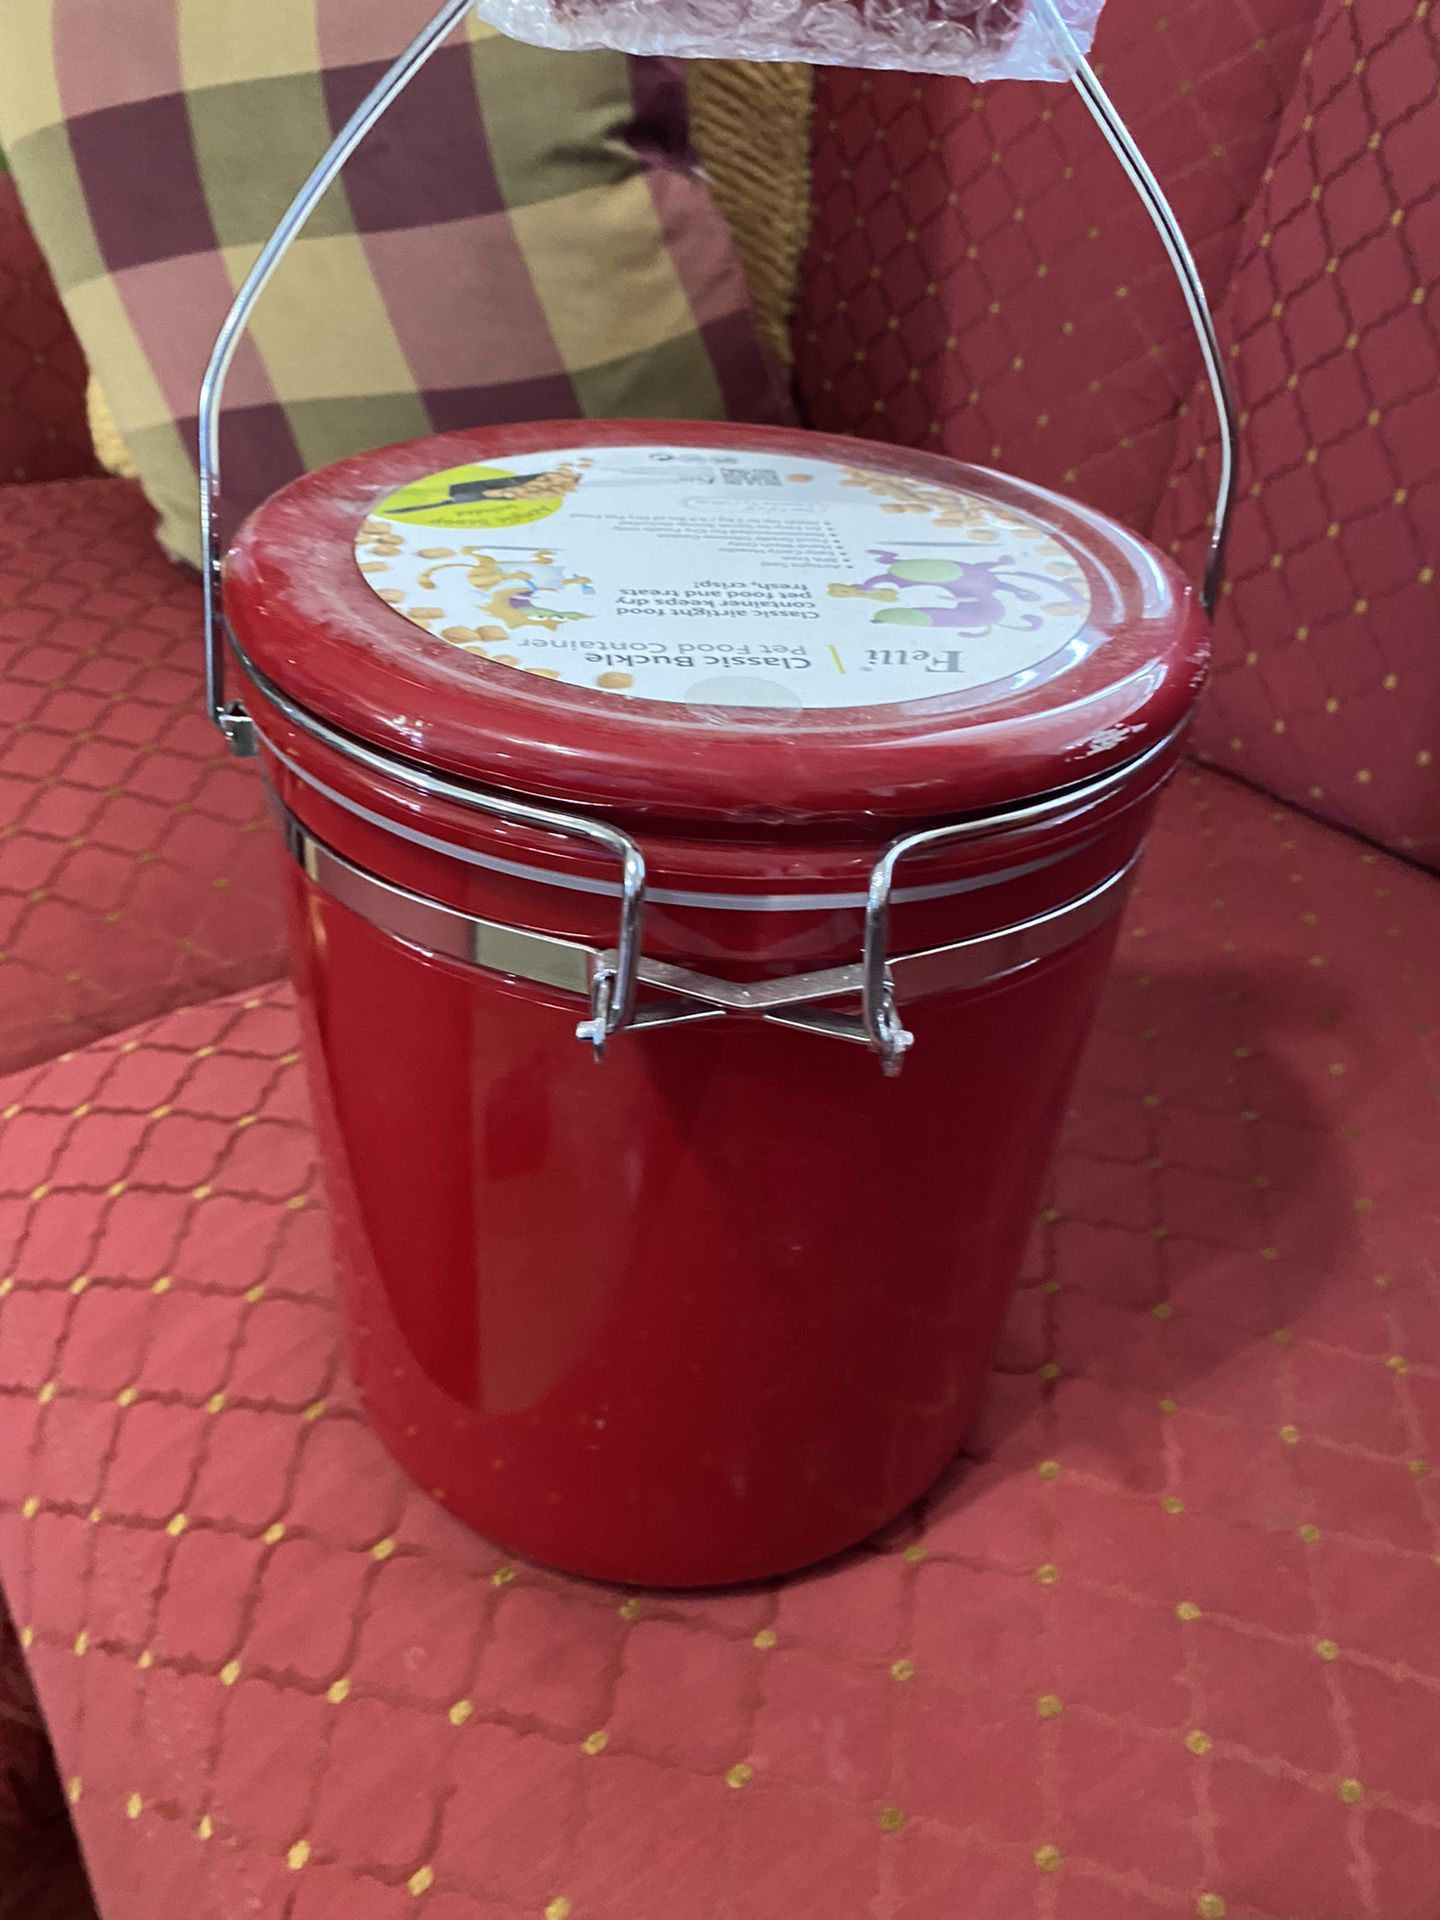 Munchkin 24 Jar Baby Food Organizer for Sale in Taylor, MI - OfferUp